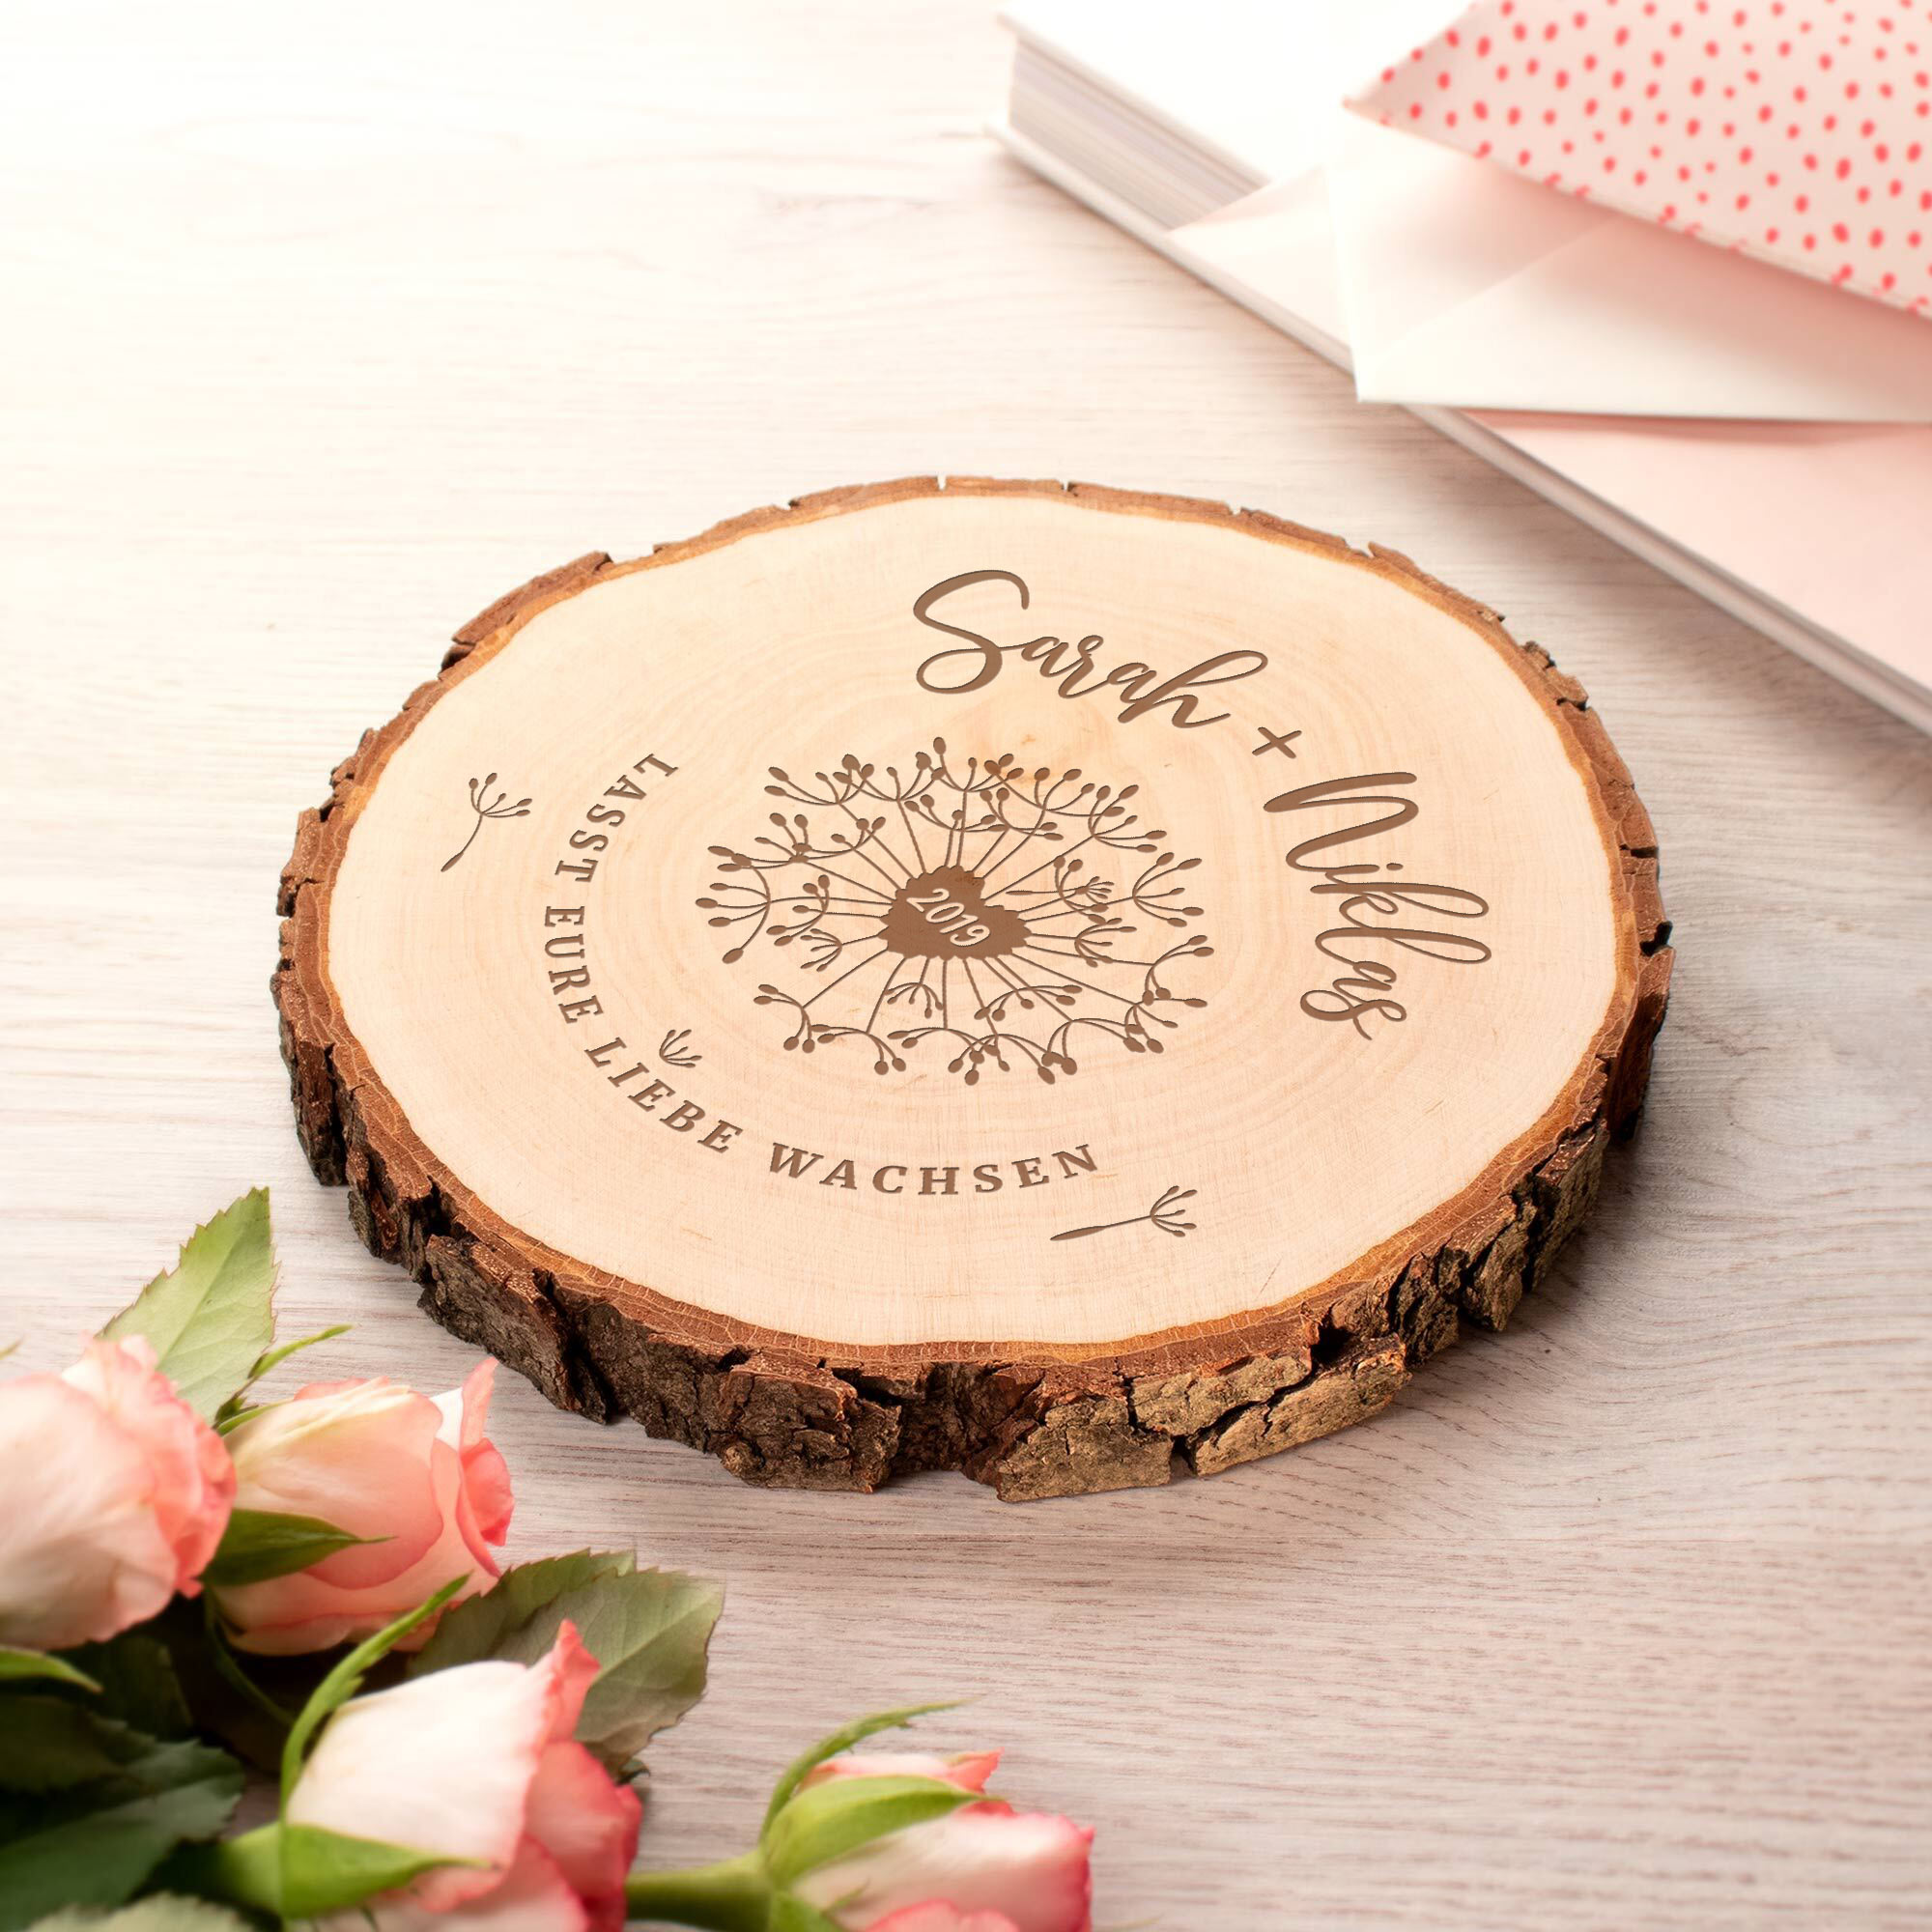 Personalisierte Baumscheibe als Geschenk für Paare & Hochzeitsdeko, Holzscheibe mit Namensgravur als dekorativer Liebesbeweis und Hochzeitsgeschenk